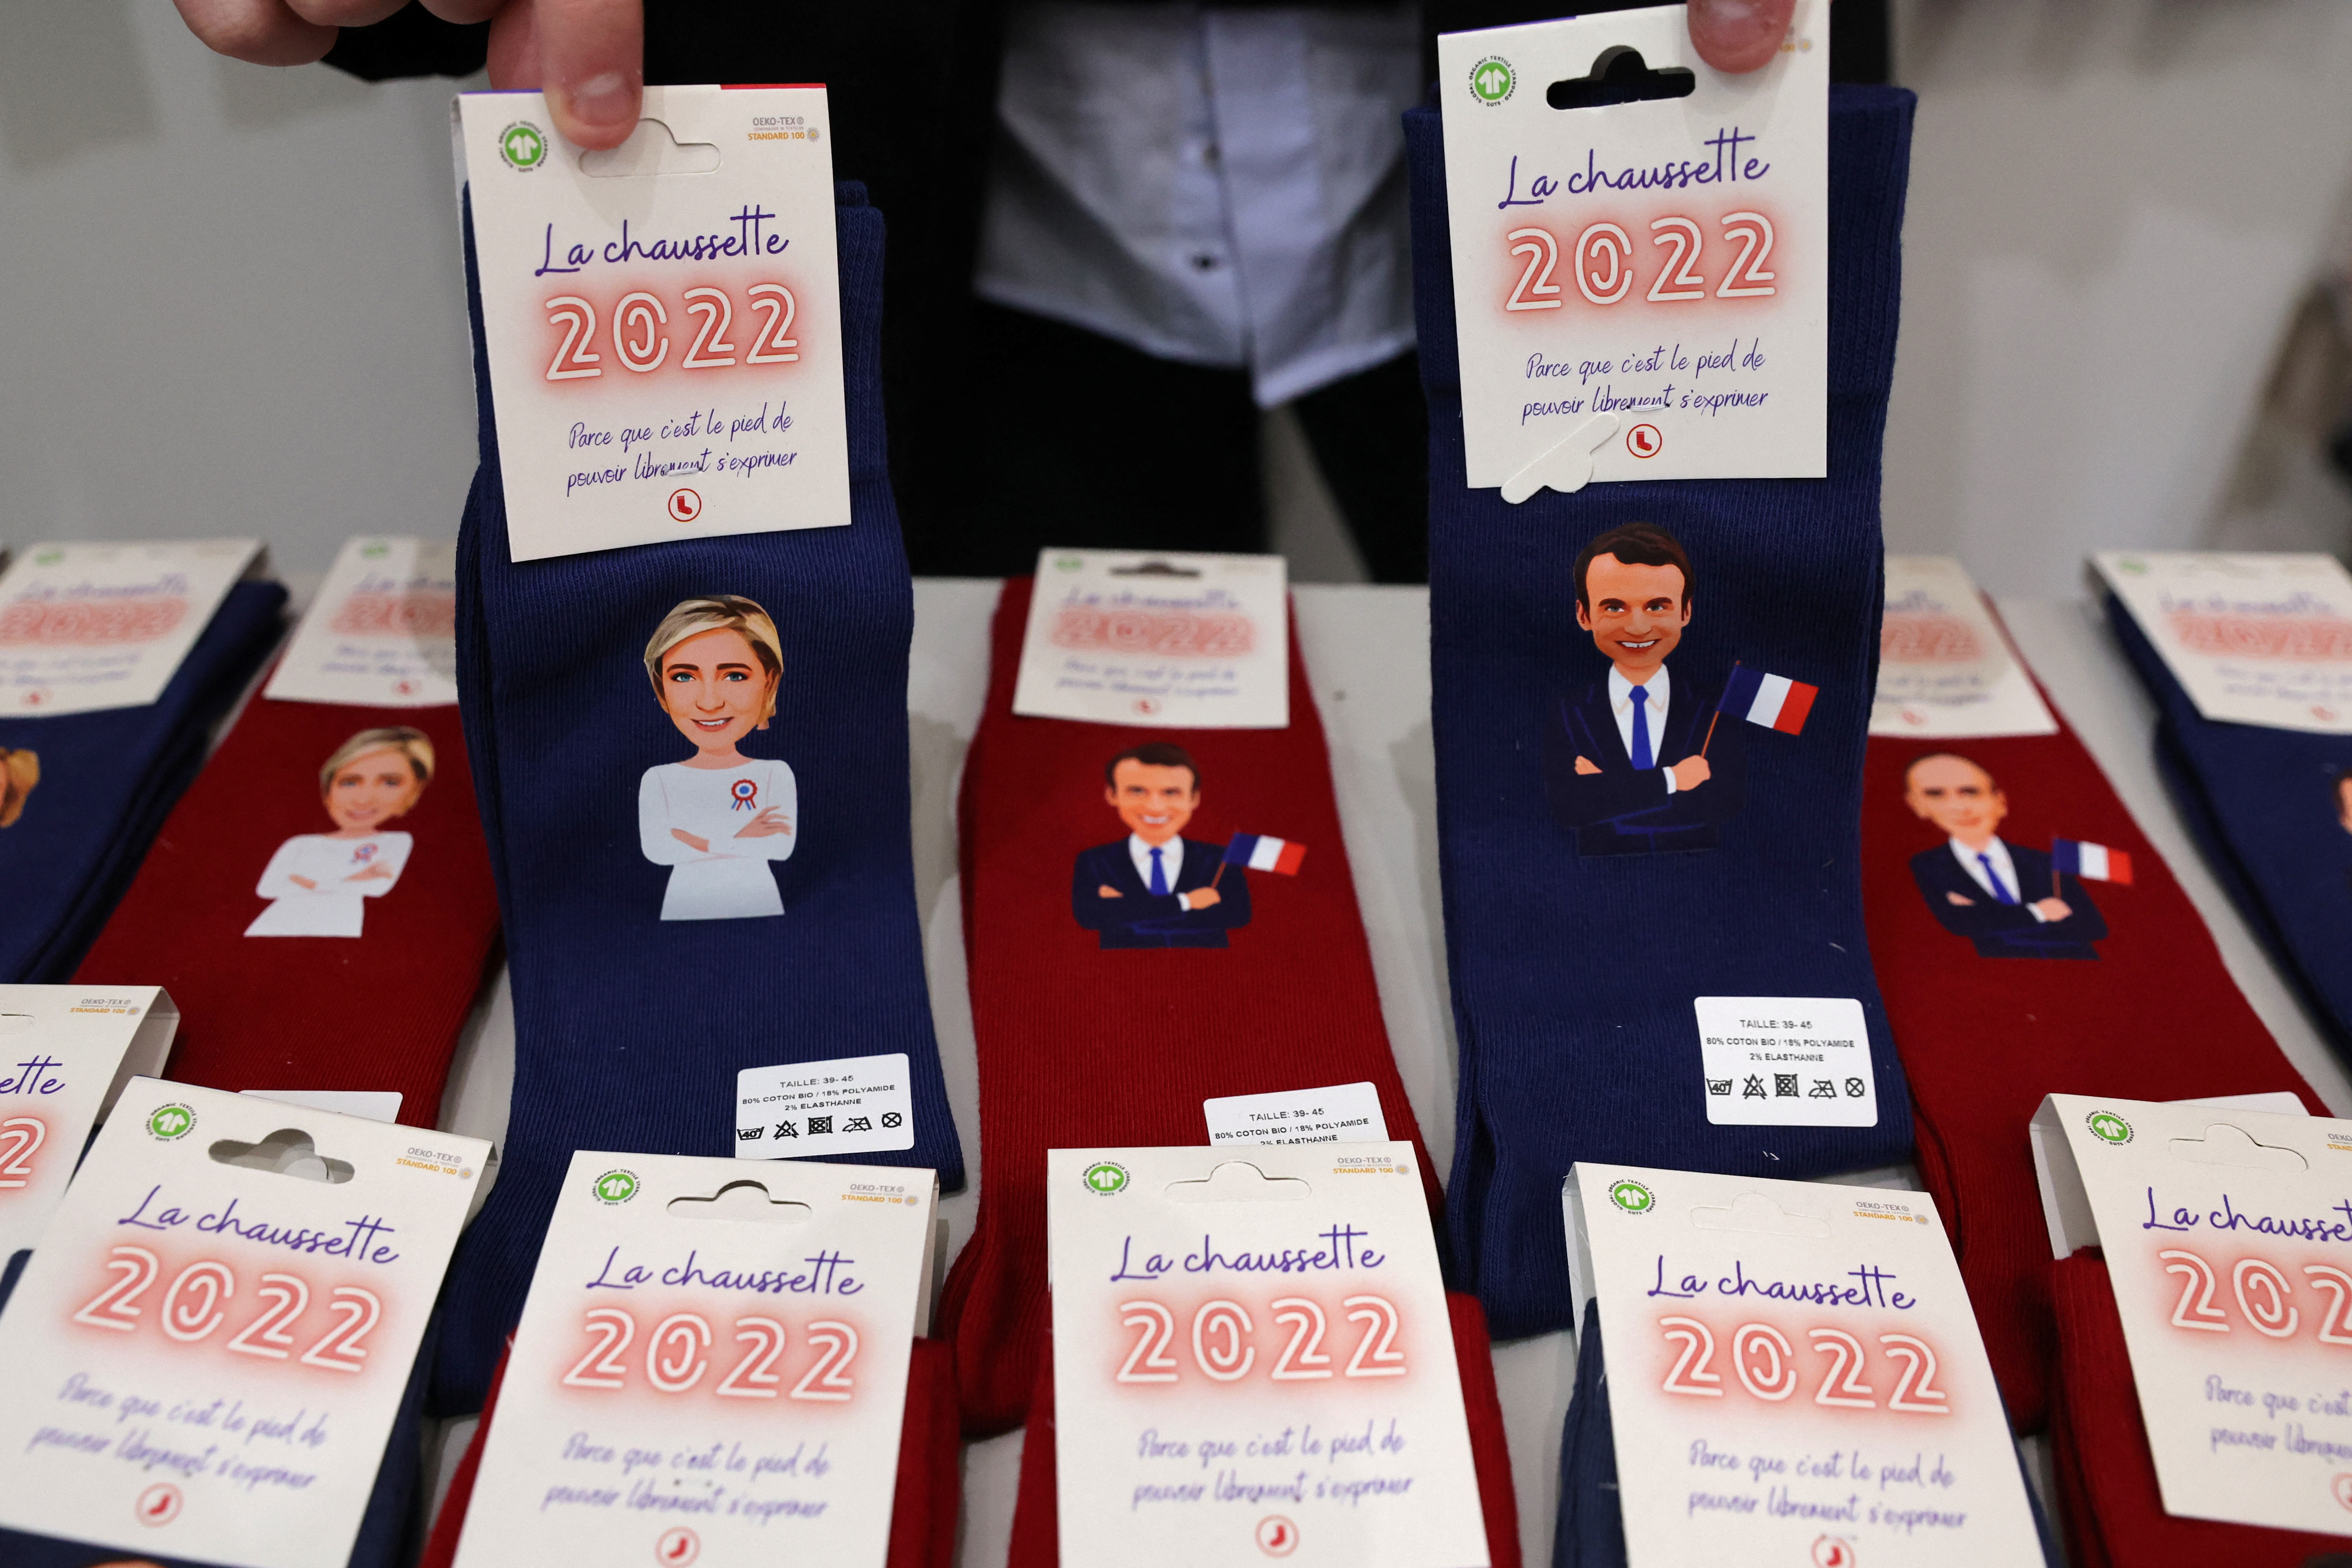 Maxime Lemersre, propietario de la tienda Chaussettes and compagnie, muestra calcetines decorados con las caras de Marine Le Pen, líder del partido francés de extrema derecha Agrupación Nacional (Rassemblement National) y candidata a las elecciones presidenciales francesas de 2022, y del presidente francés Emmanuel Macron, candidato a su reelección )REUTERS/Pascal Rossignol)